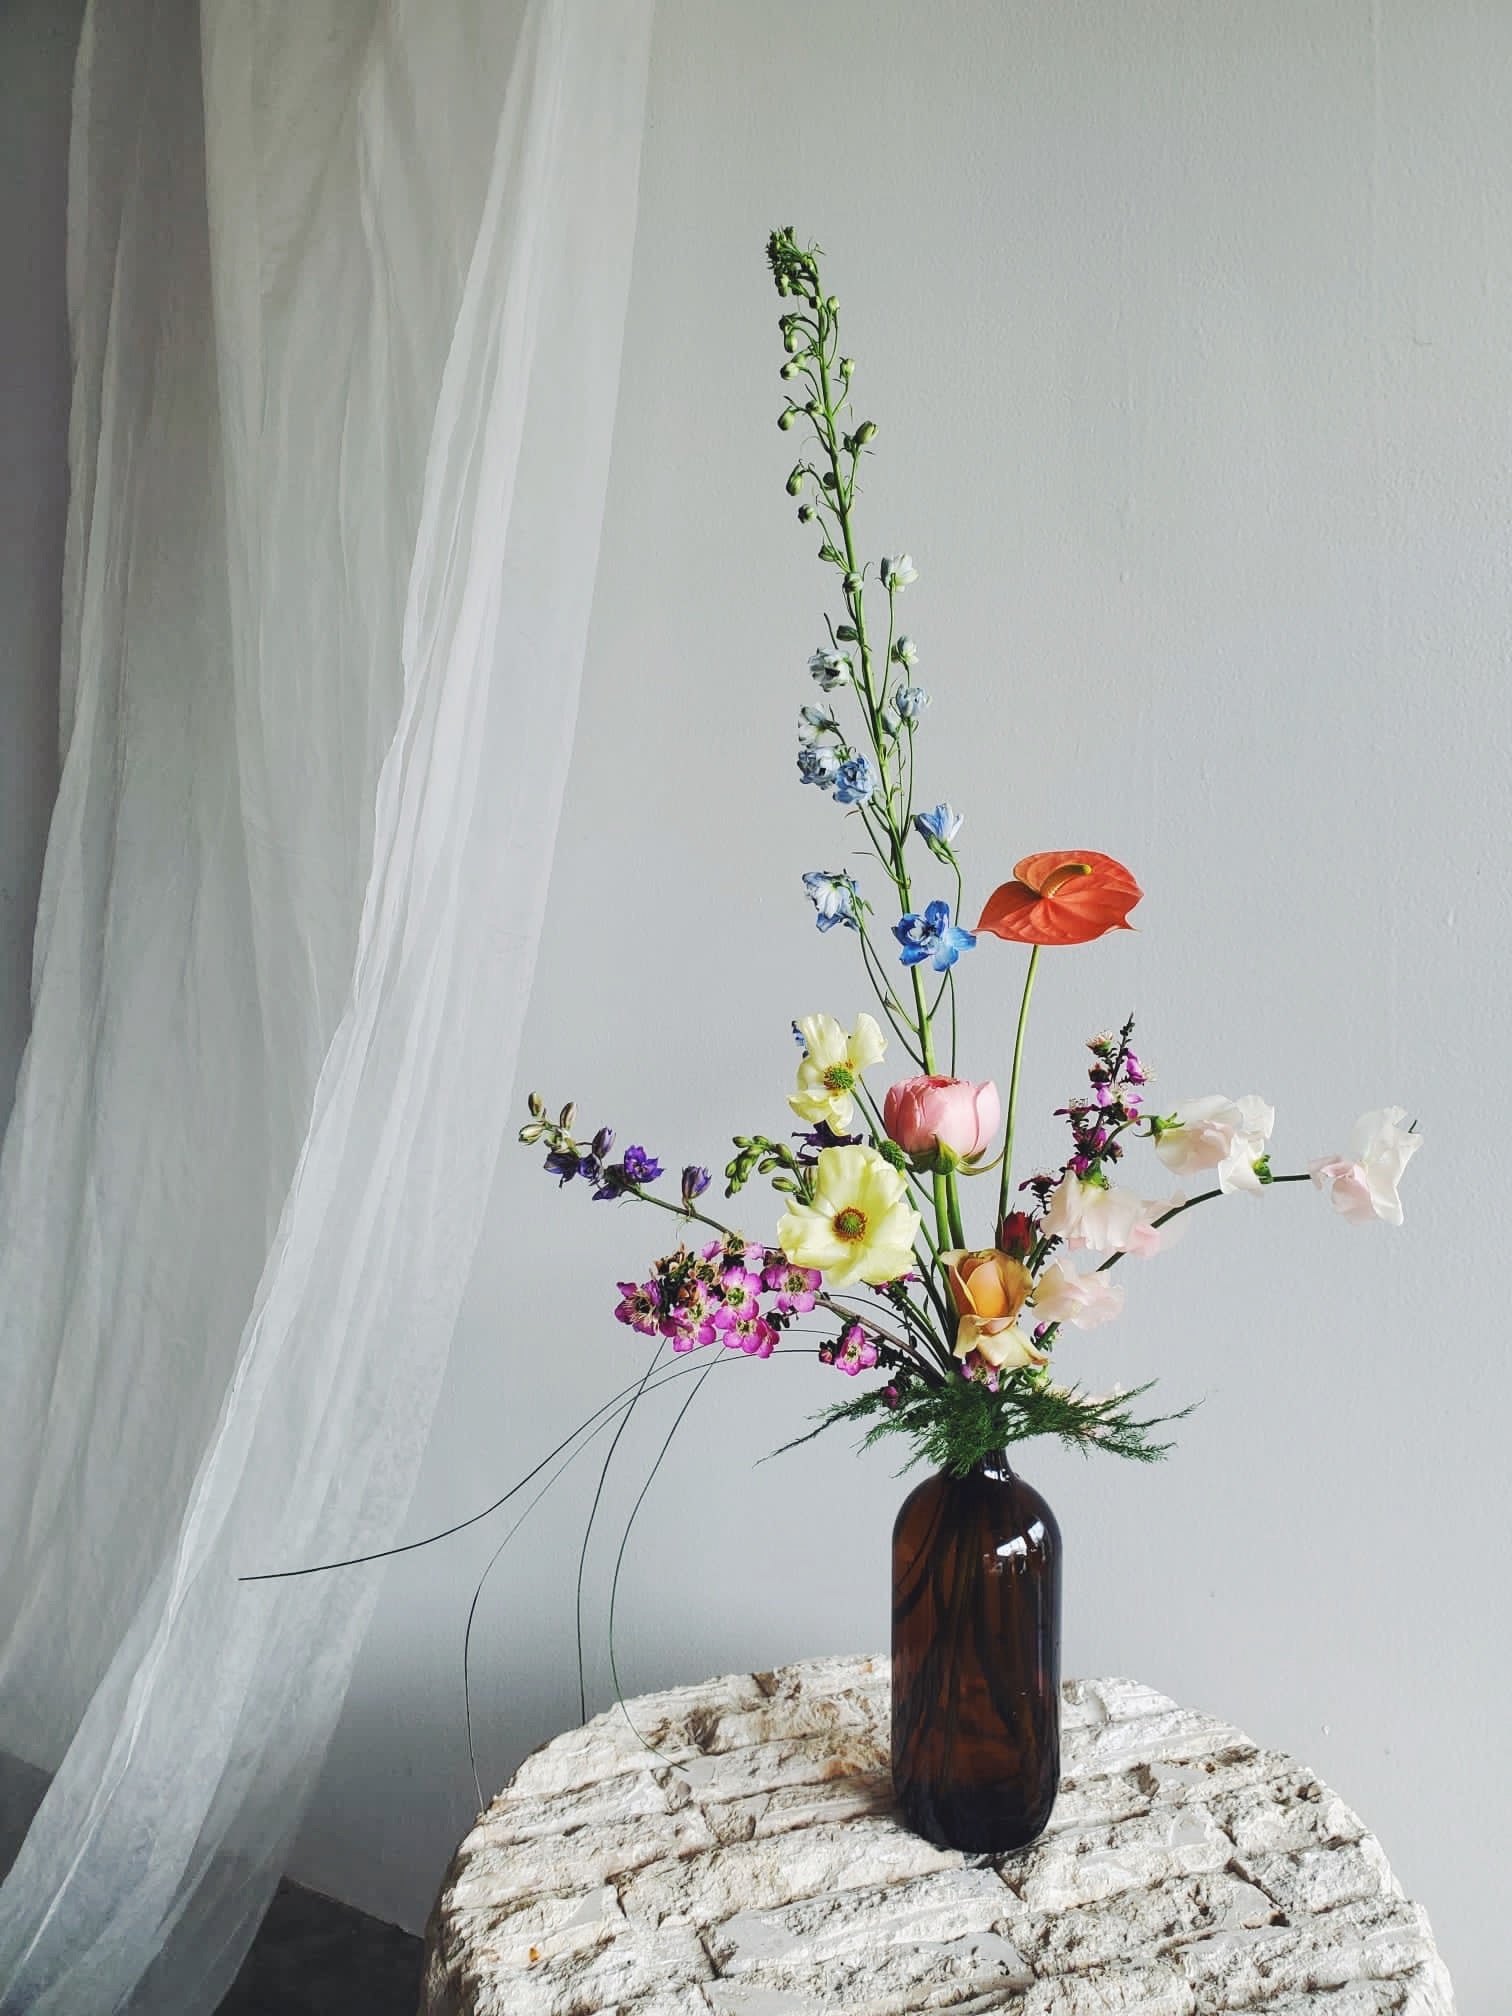 Flower Delivery Vancouver-The Bottle Arrangement-Flower Arrangements-Florist-The Wild Bunch Flower Shop